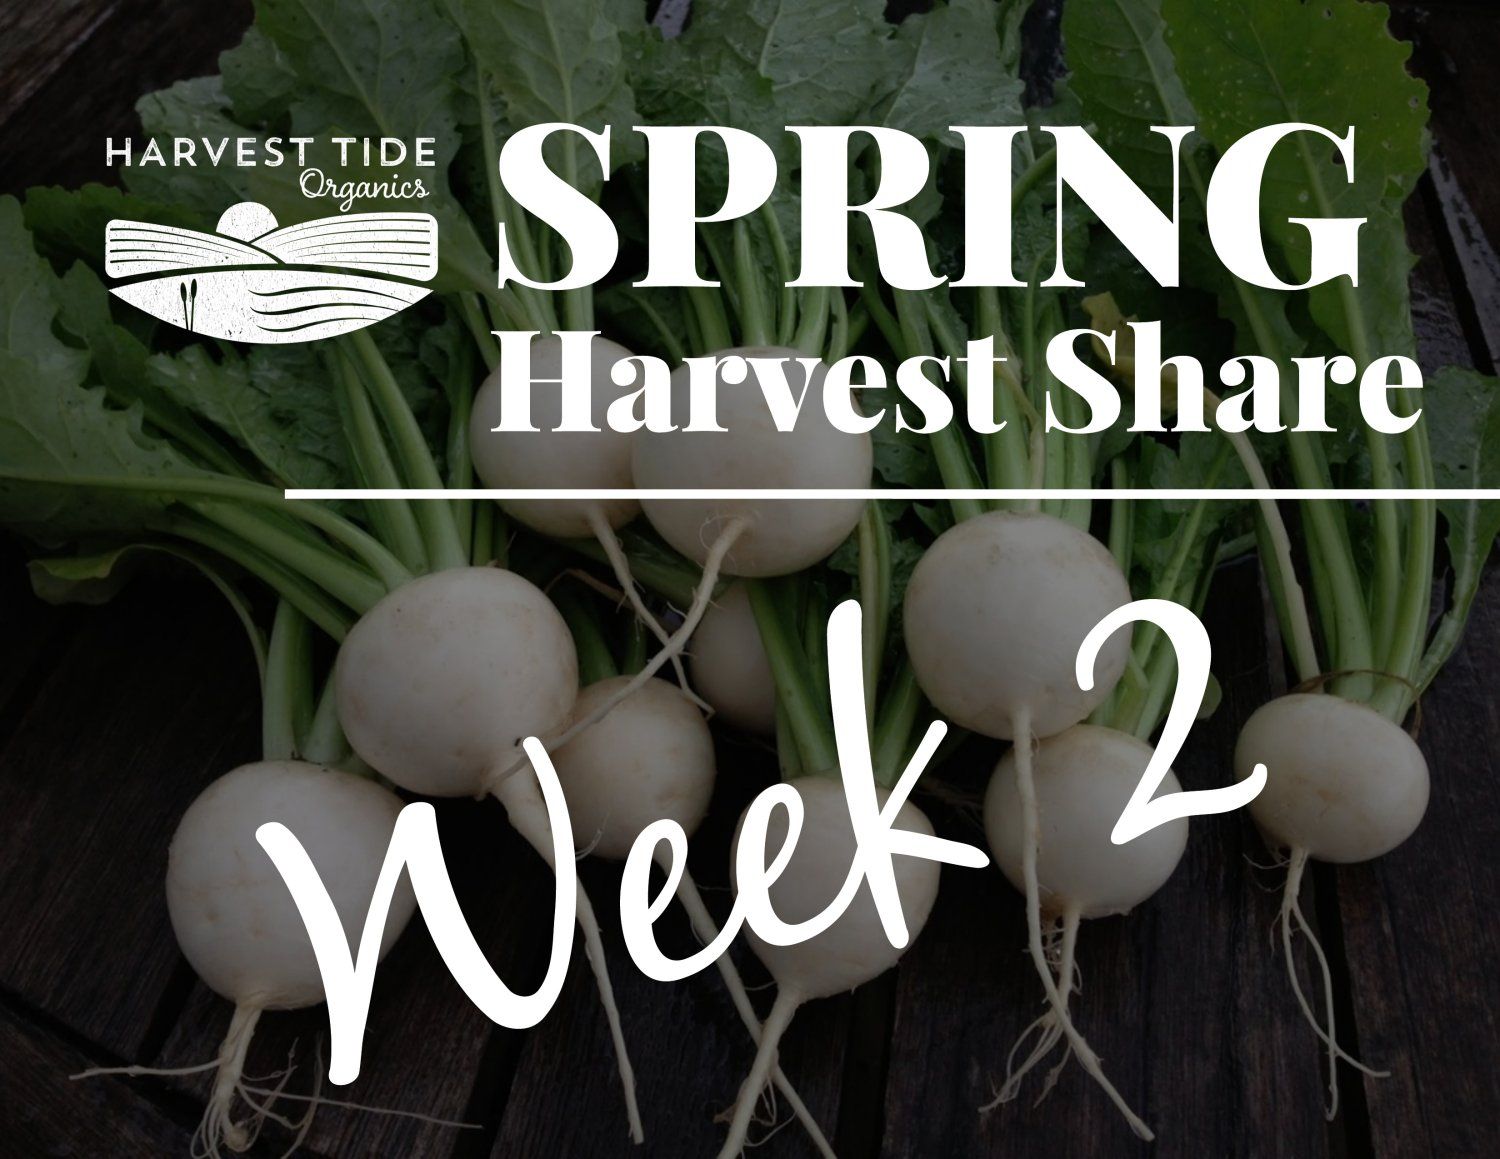 Next Happening: Spring Harvest Share - Week 2